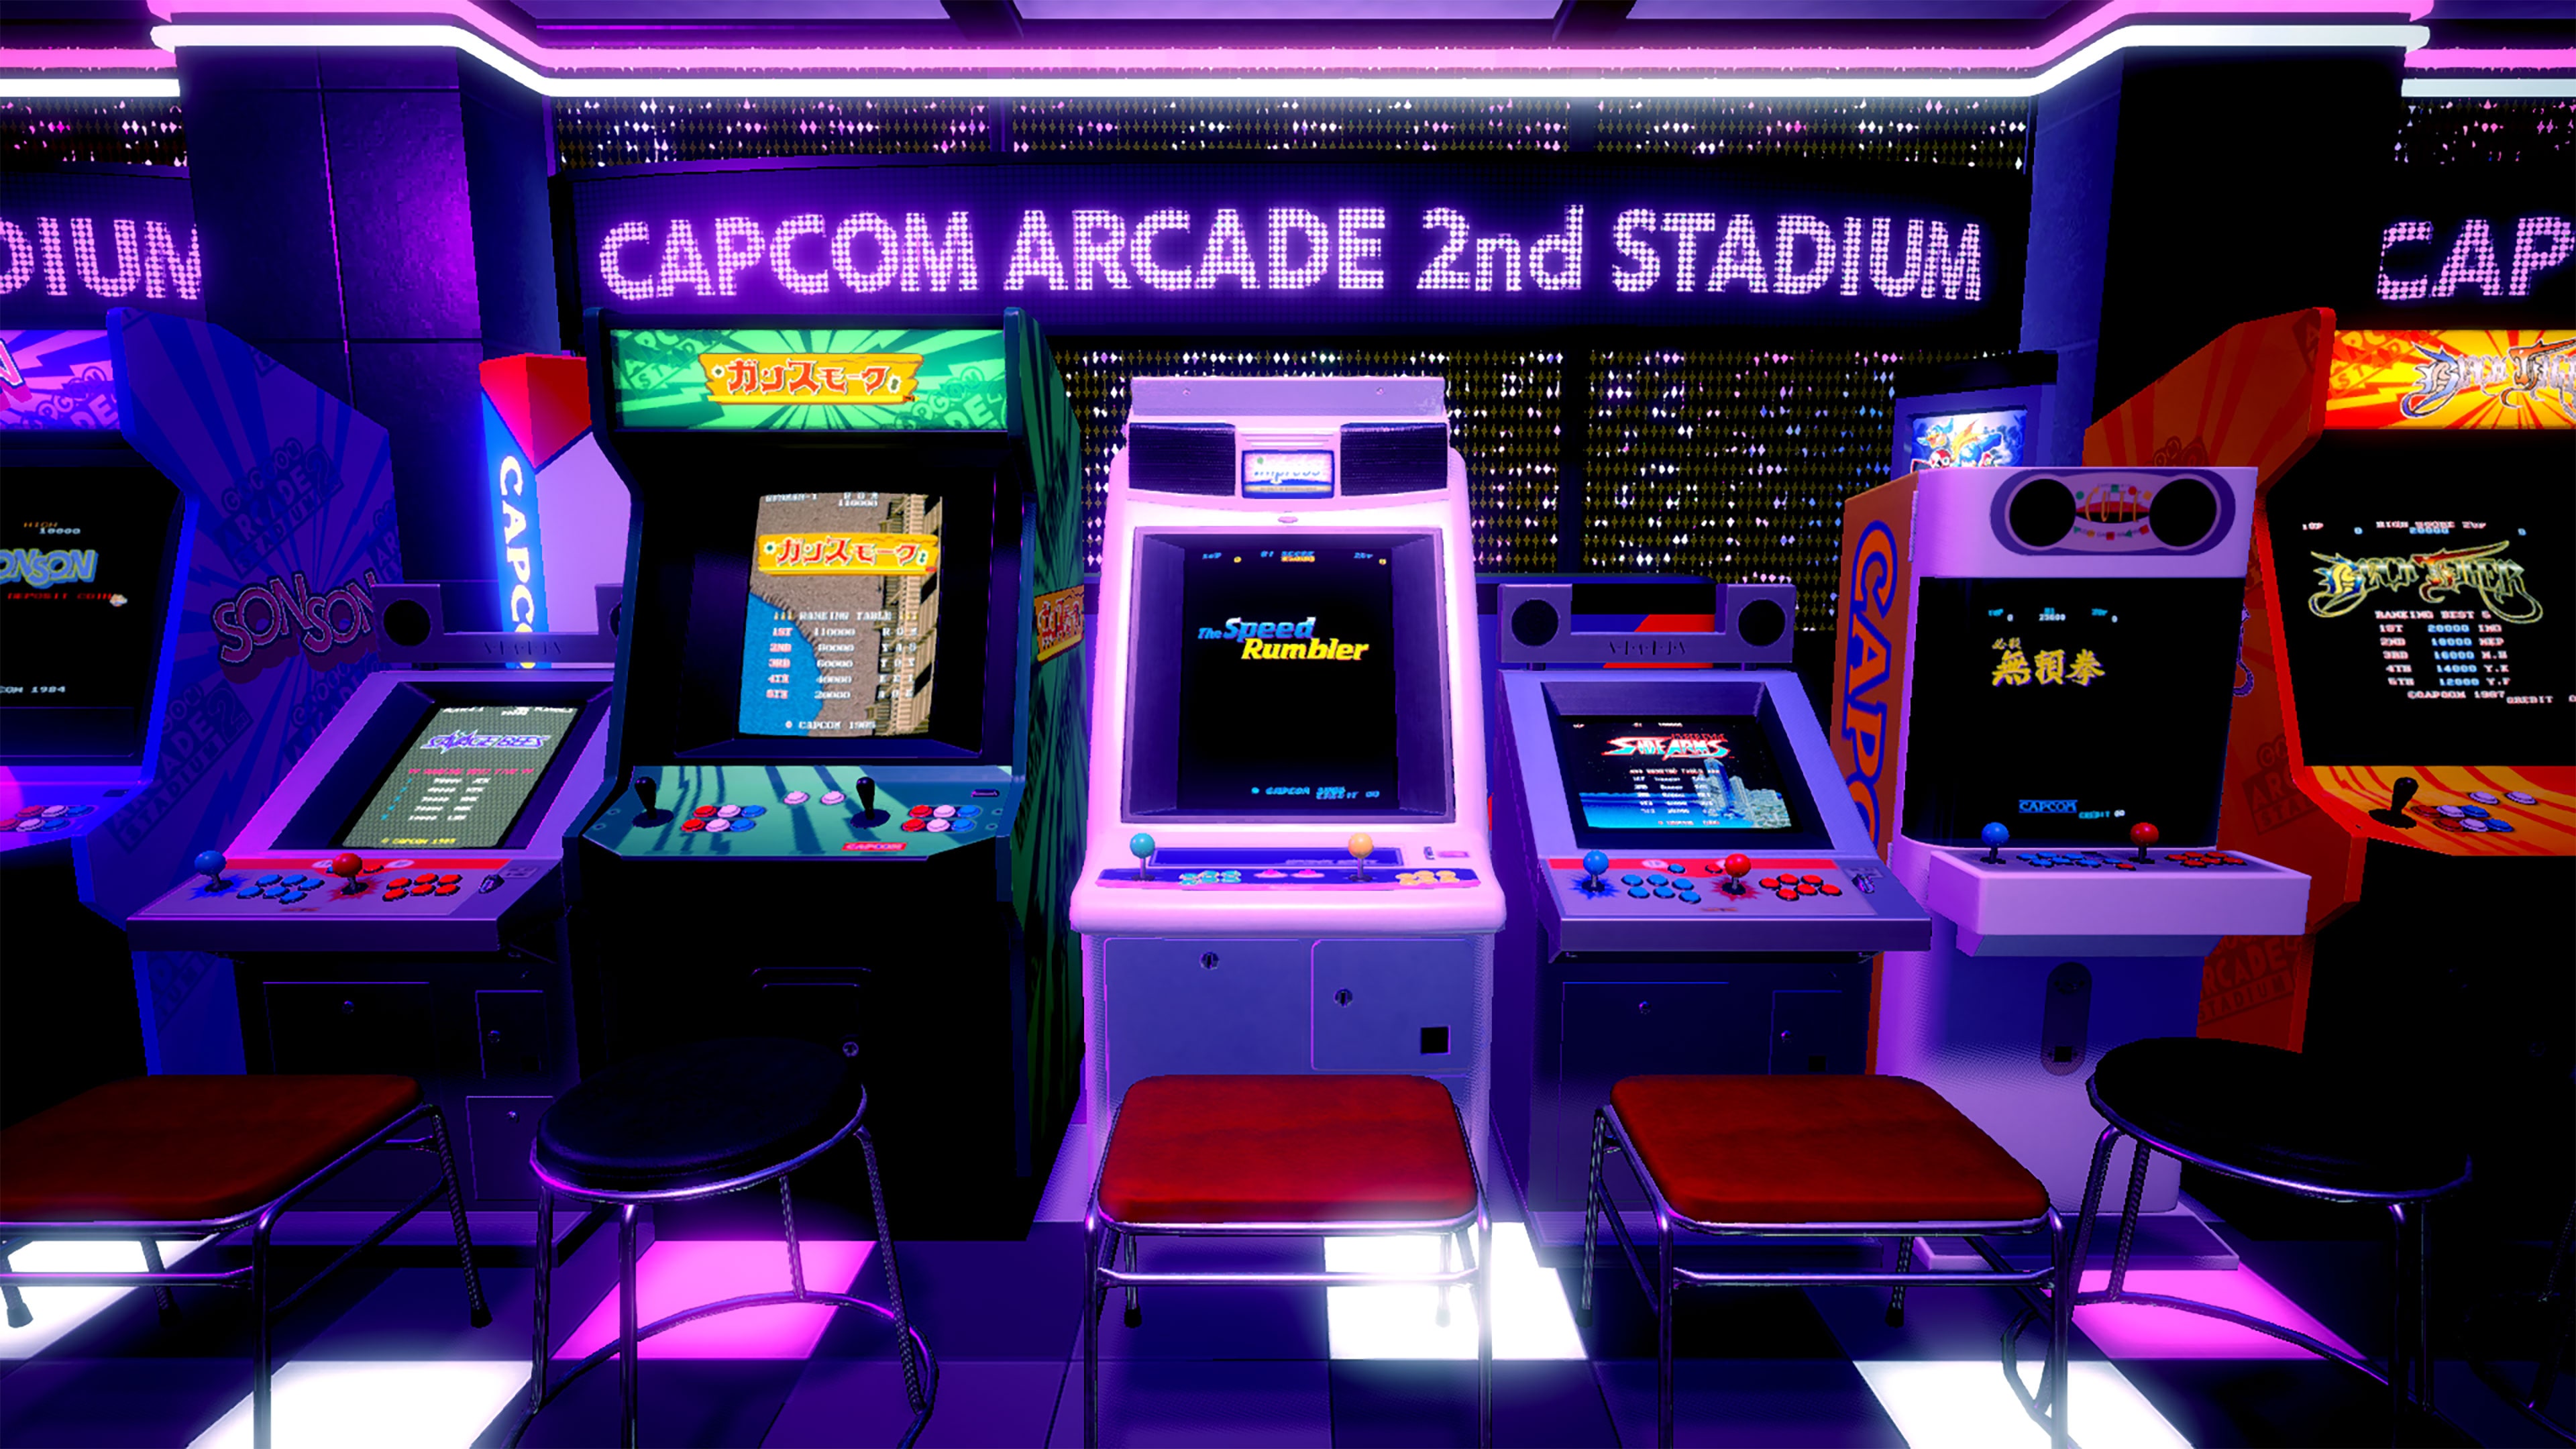 Compilação Capcom 2nd Stadium de jogos retrô é confirmada para PC e consoles